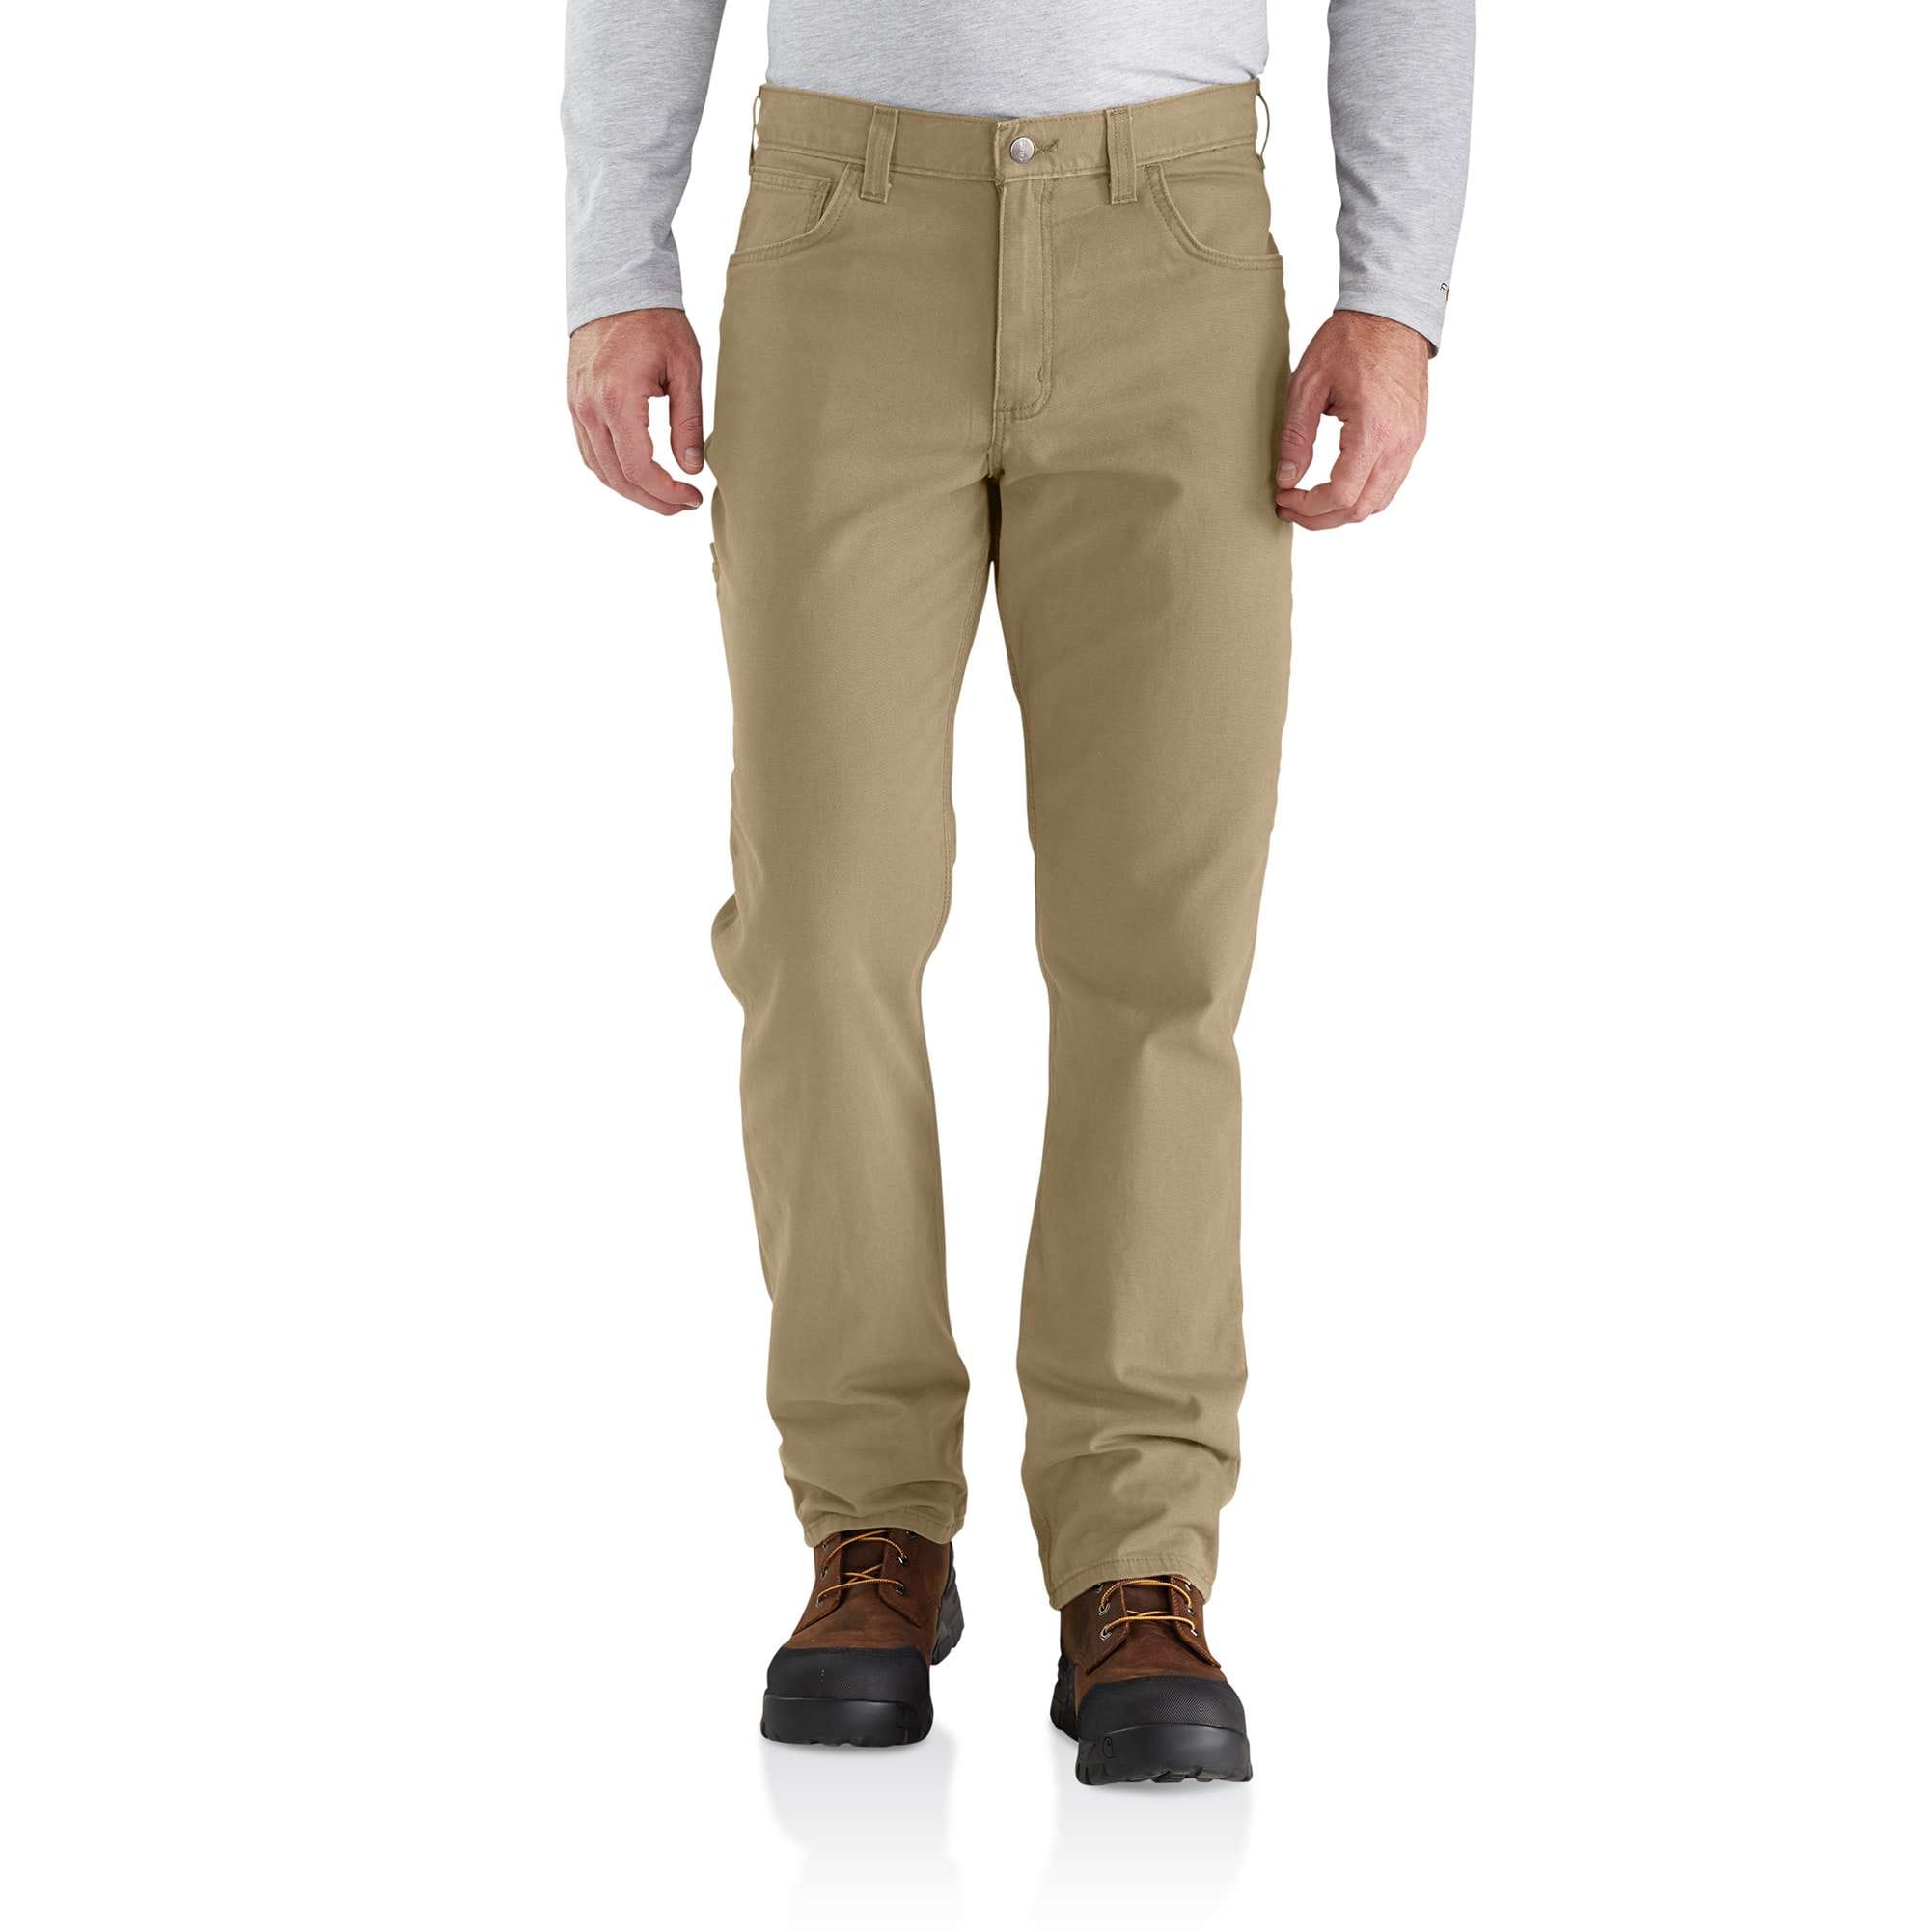 Men's Uniform Pants, Industrial Pants for Men